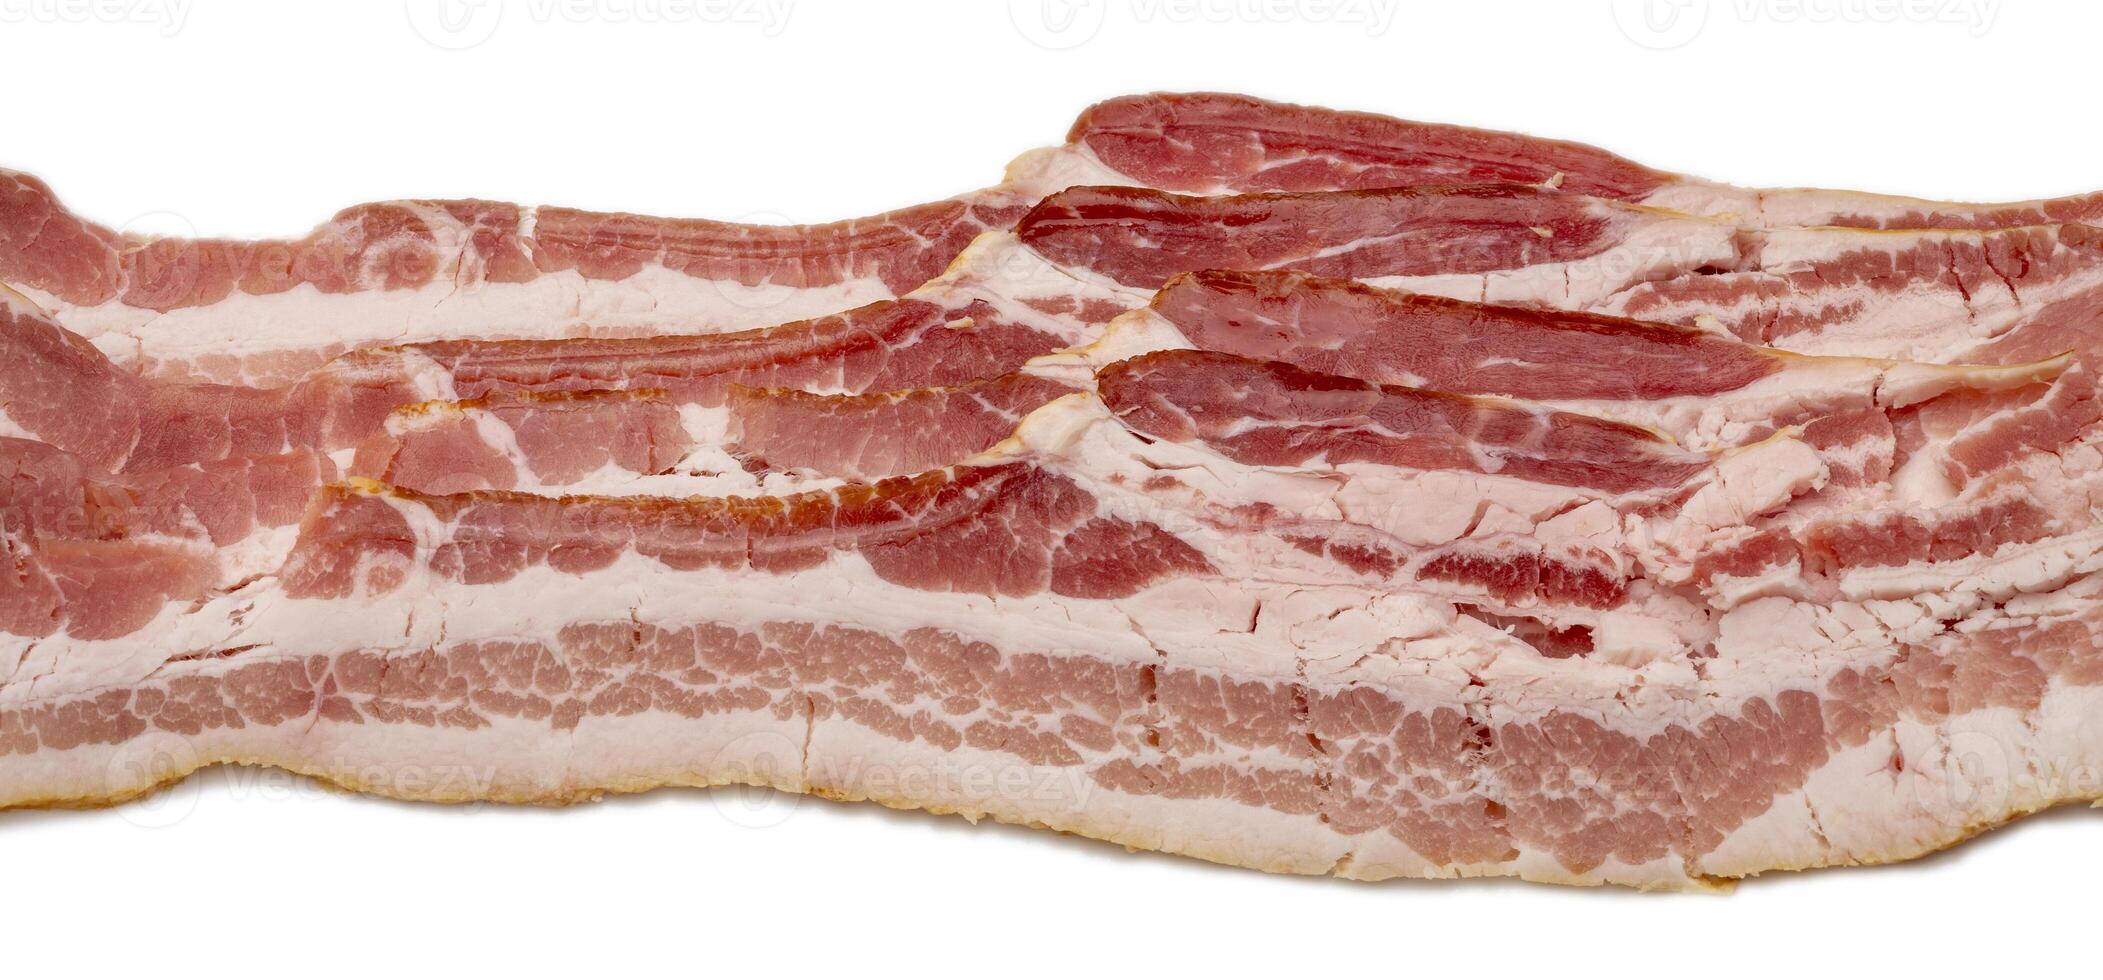 tranches de non durci Bacon isolé sur blanc photo